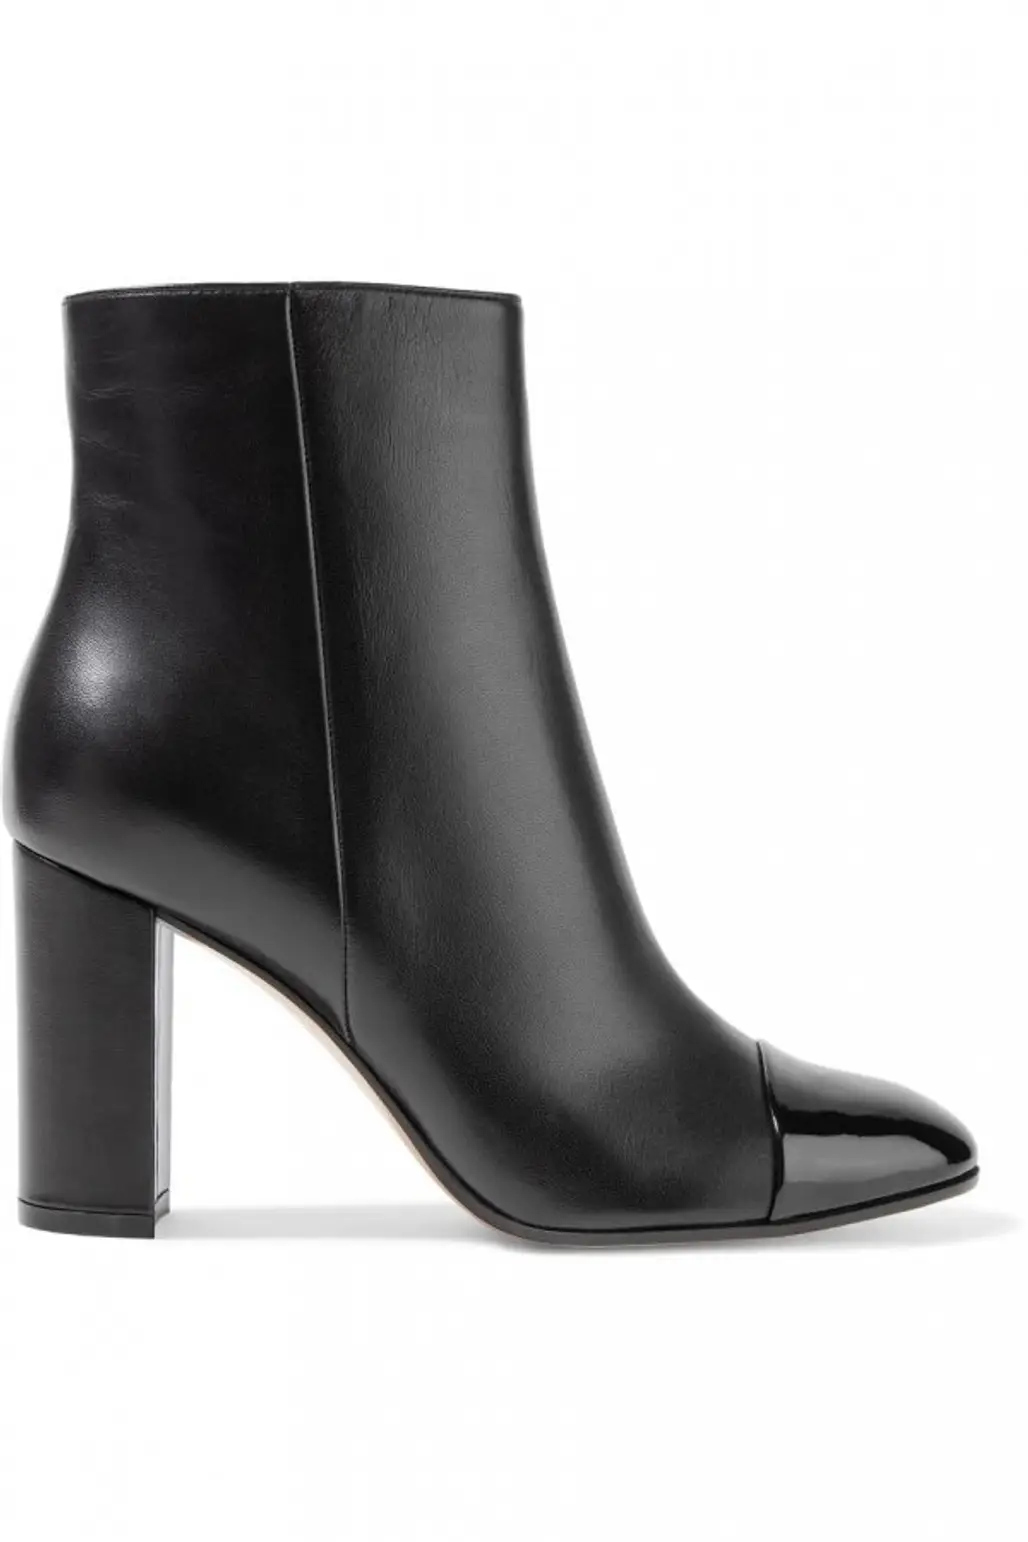 footwear, black, boot, high heeled footwear, shoe,